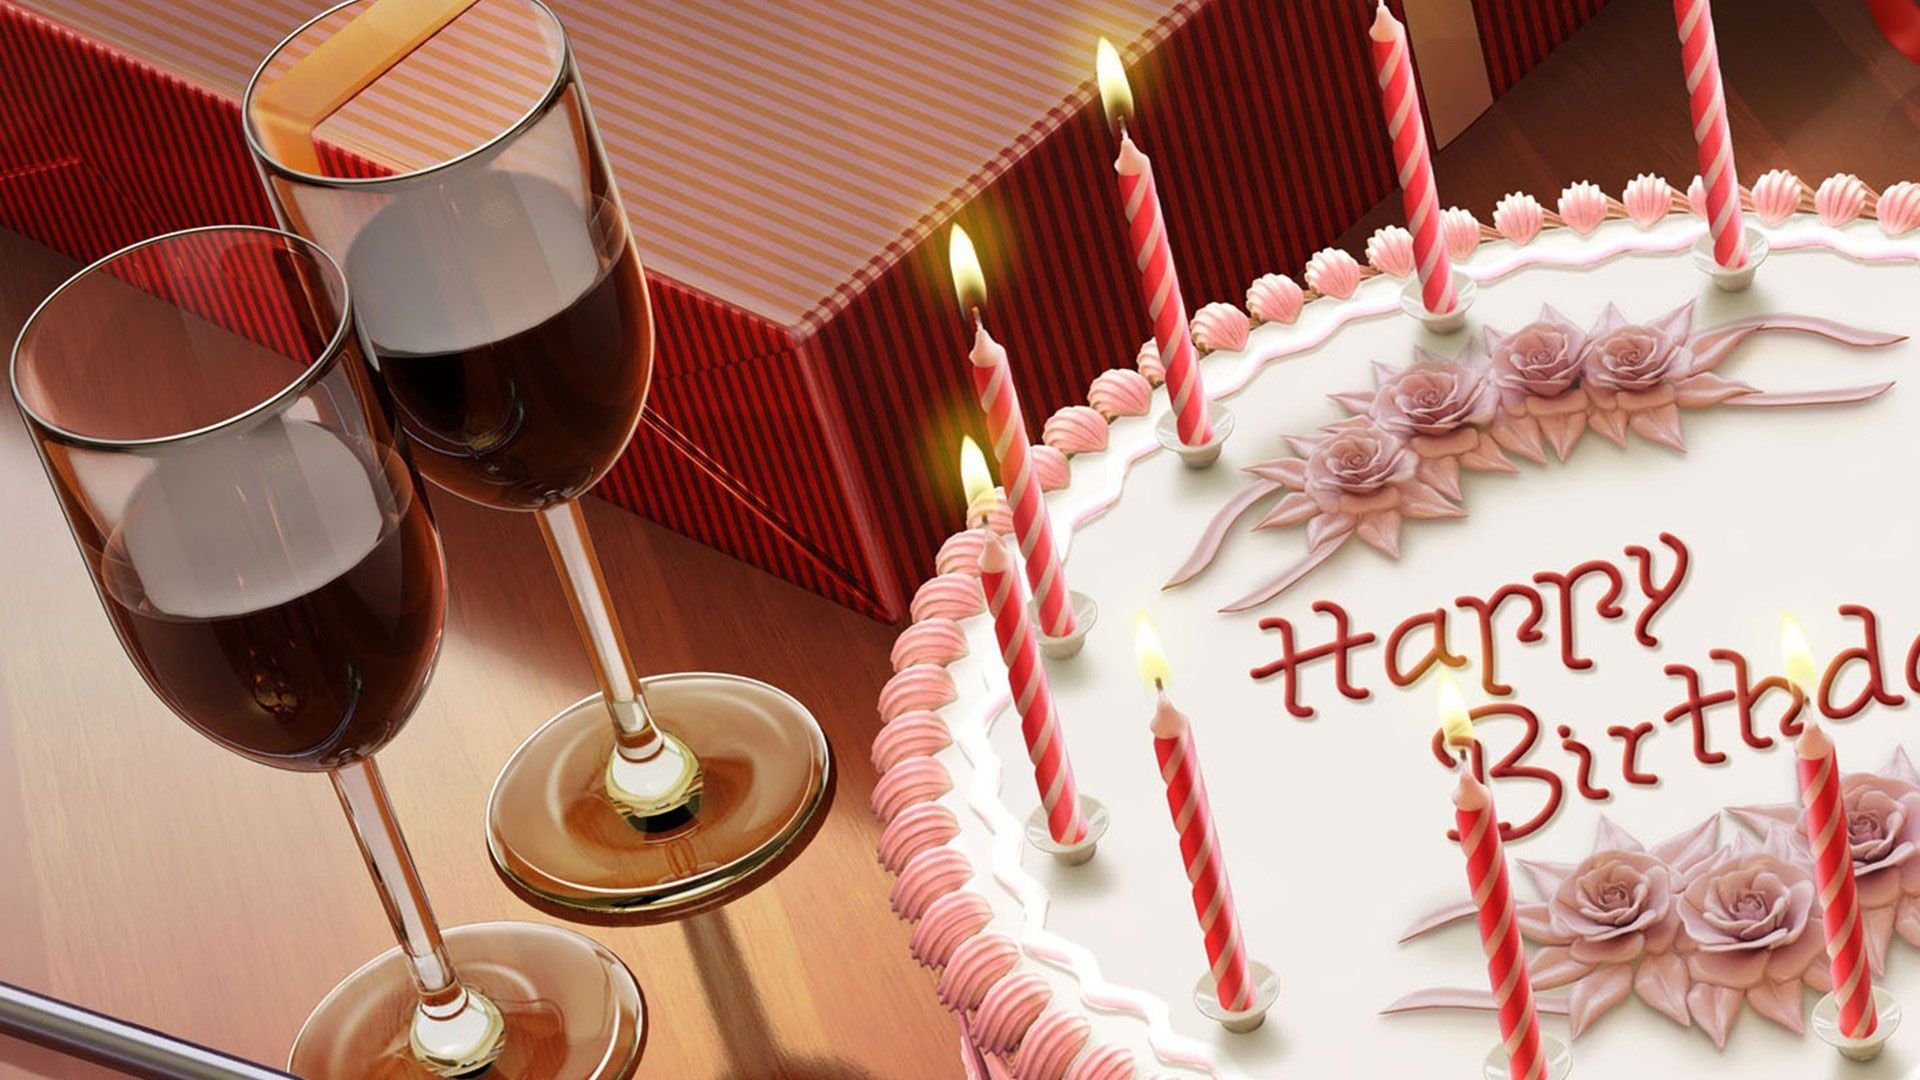 Др фактически. Тортик с днем рождения. Открытка с днём рождения торт. Свеча в торт "с днем рождения". Свечи для торта.